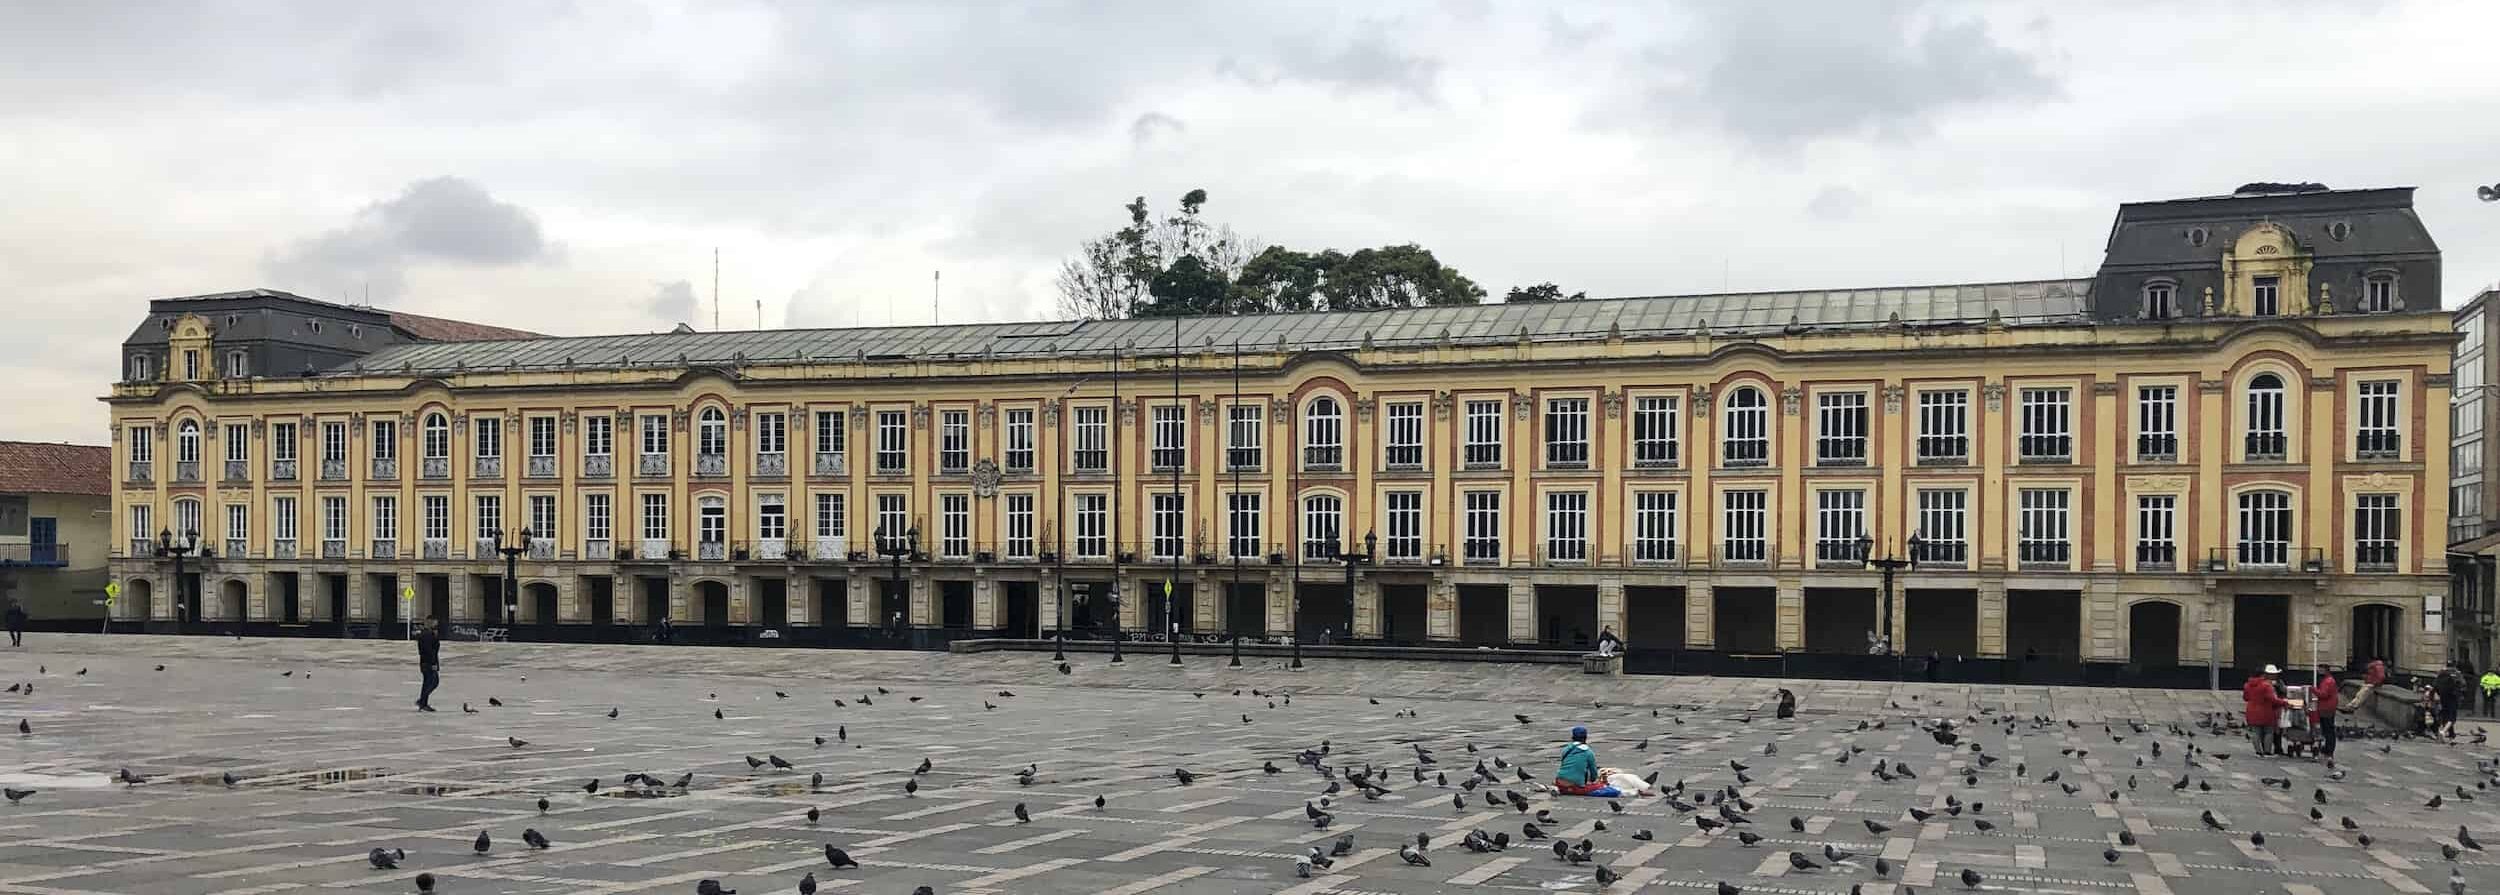 Liévano Palace on Plaza de Bolívar, La Candelaria, Bogotá, Colombia